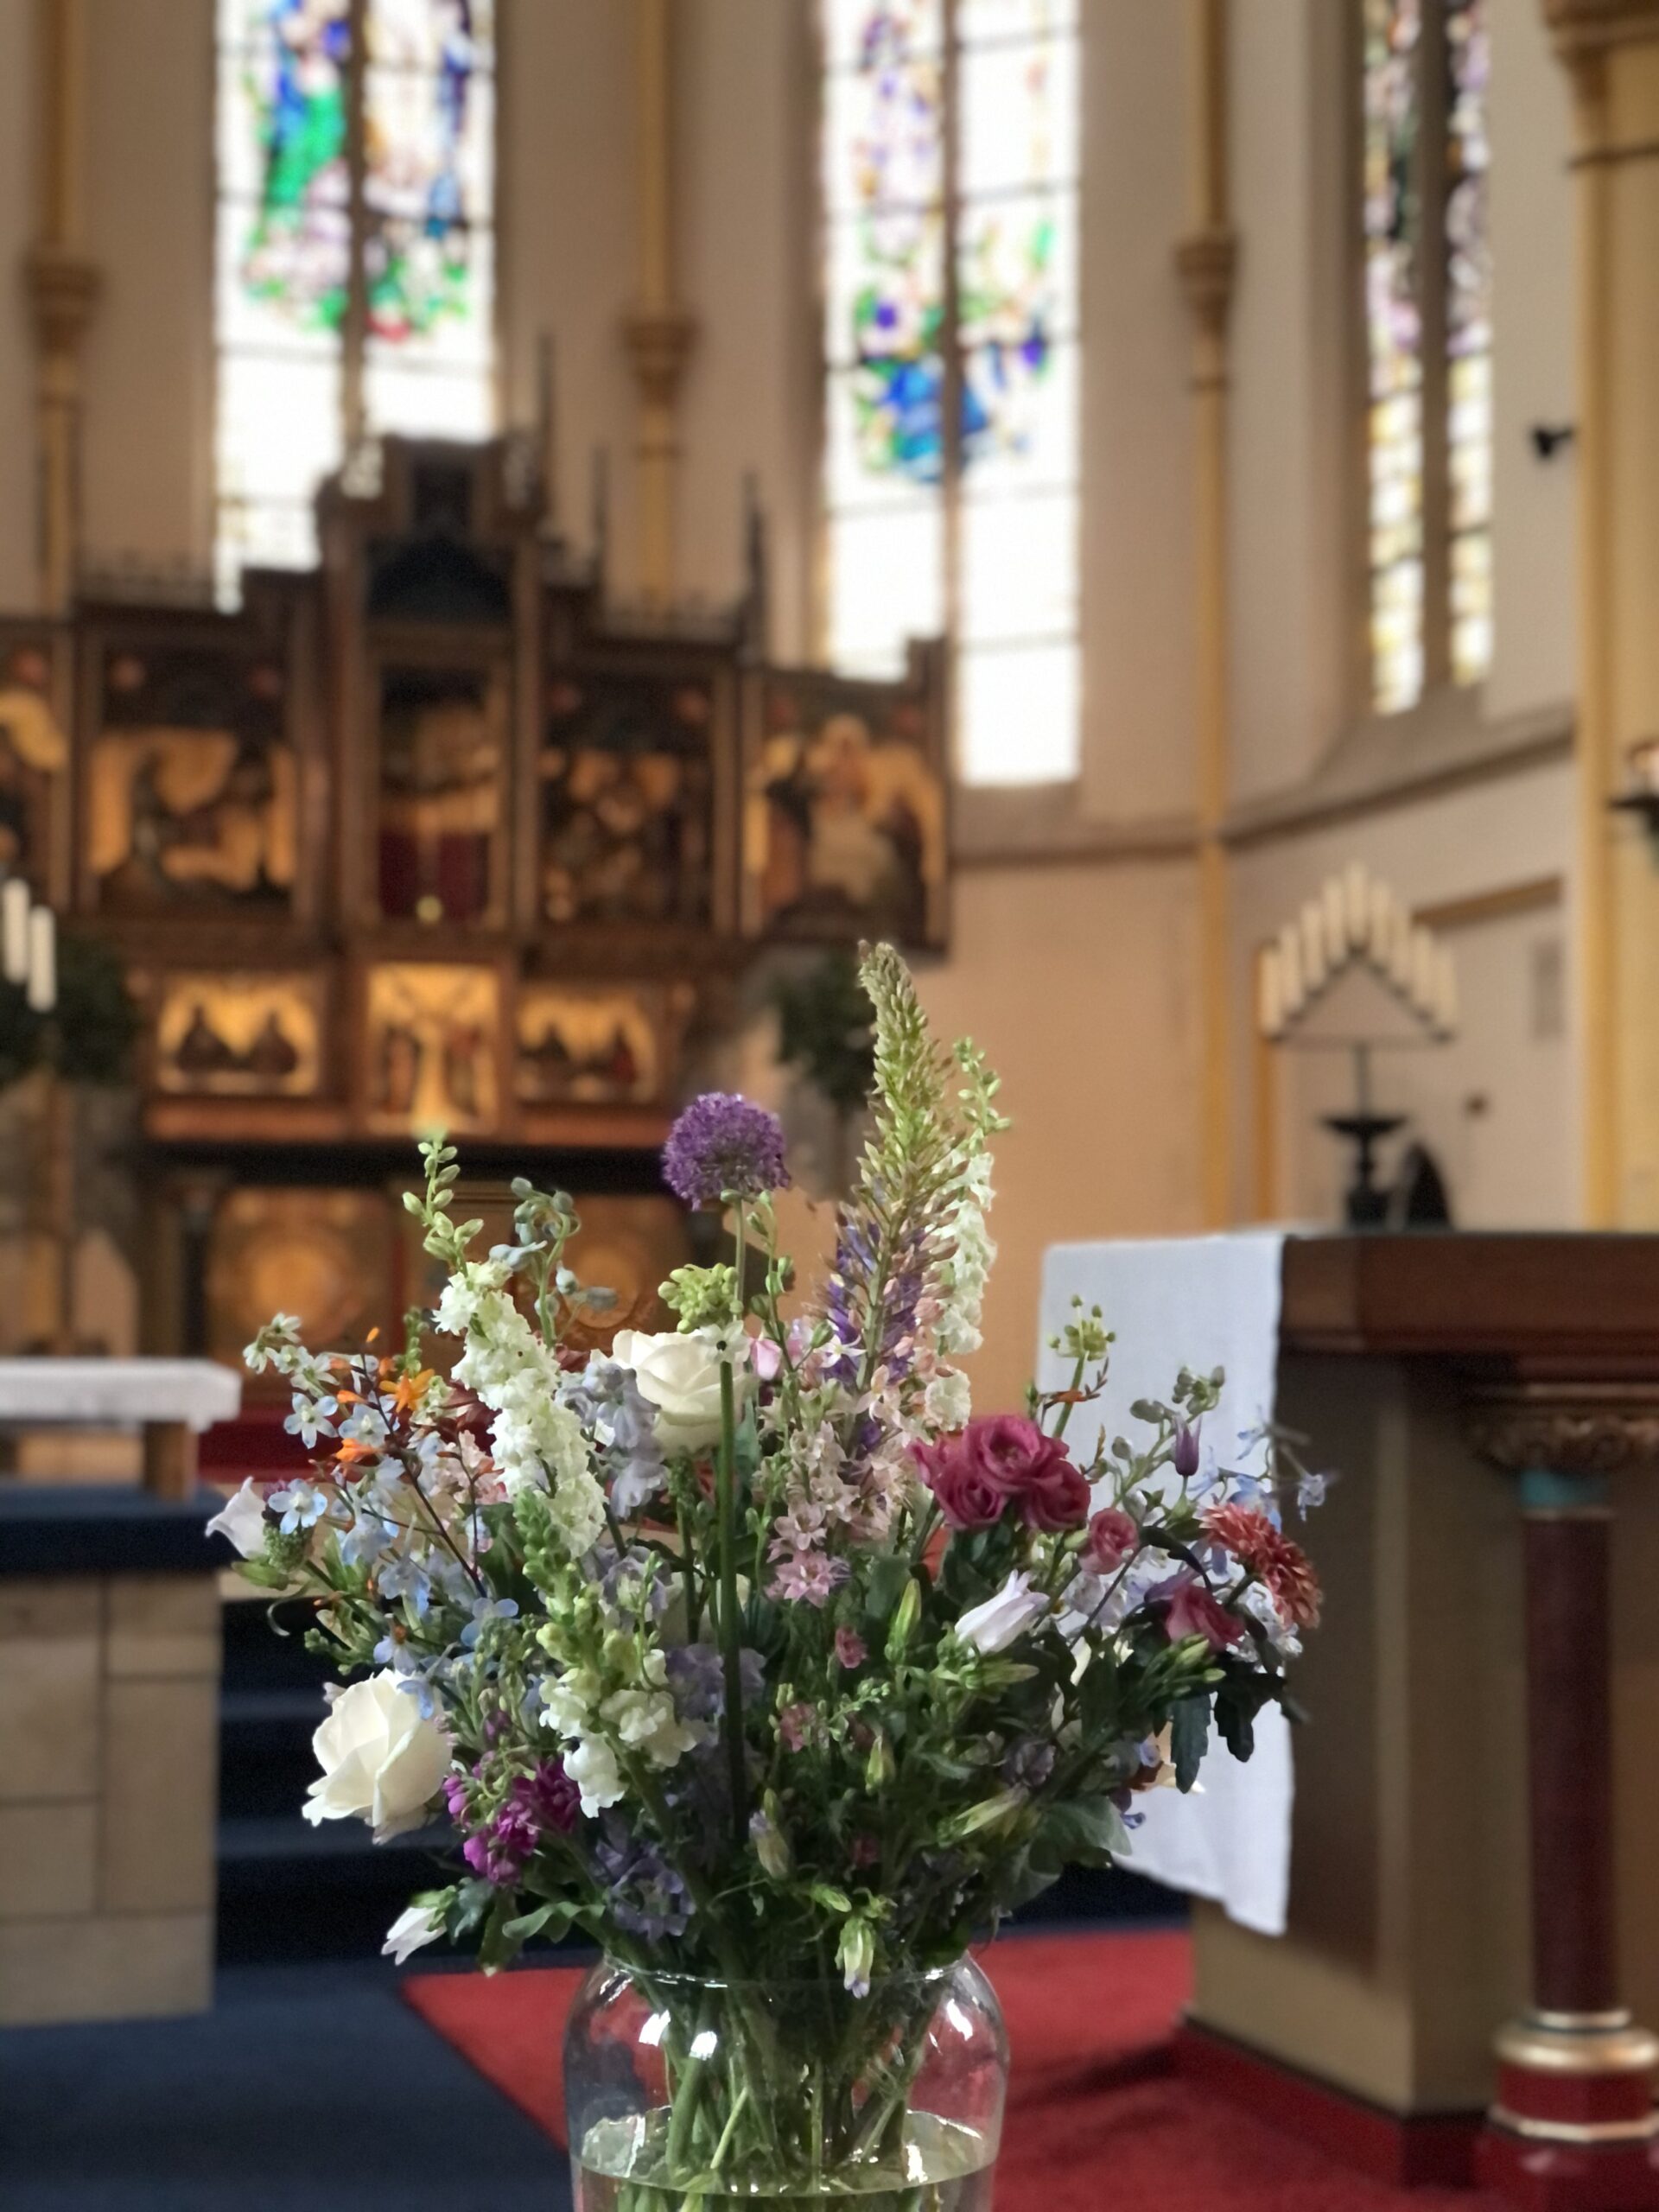 Afscheidsbloemen Veldbloemen in kerk uitvaart